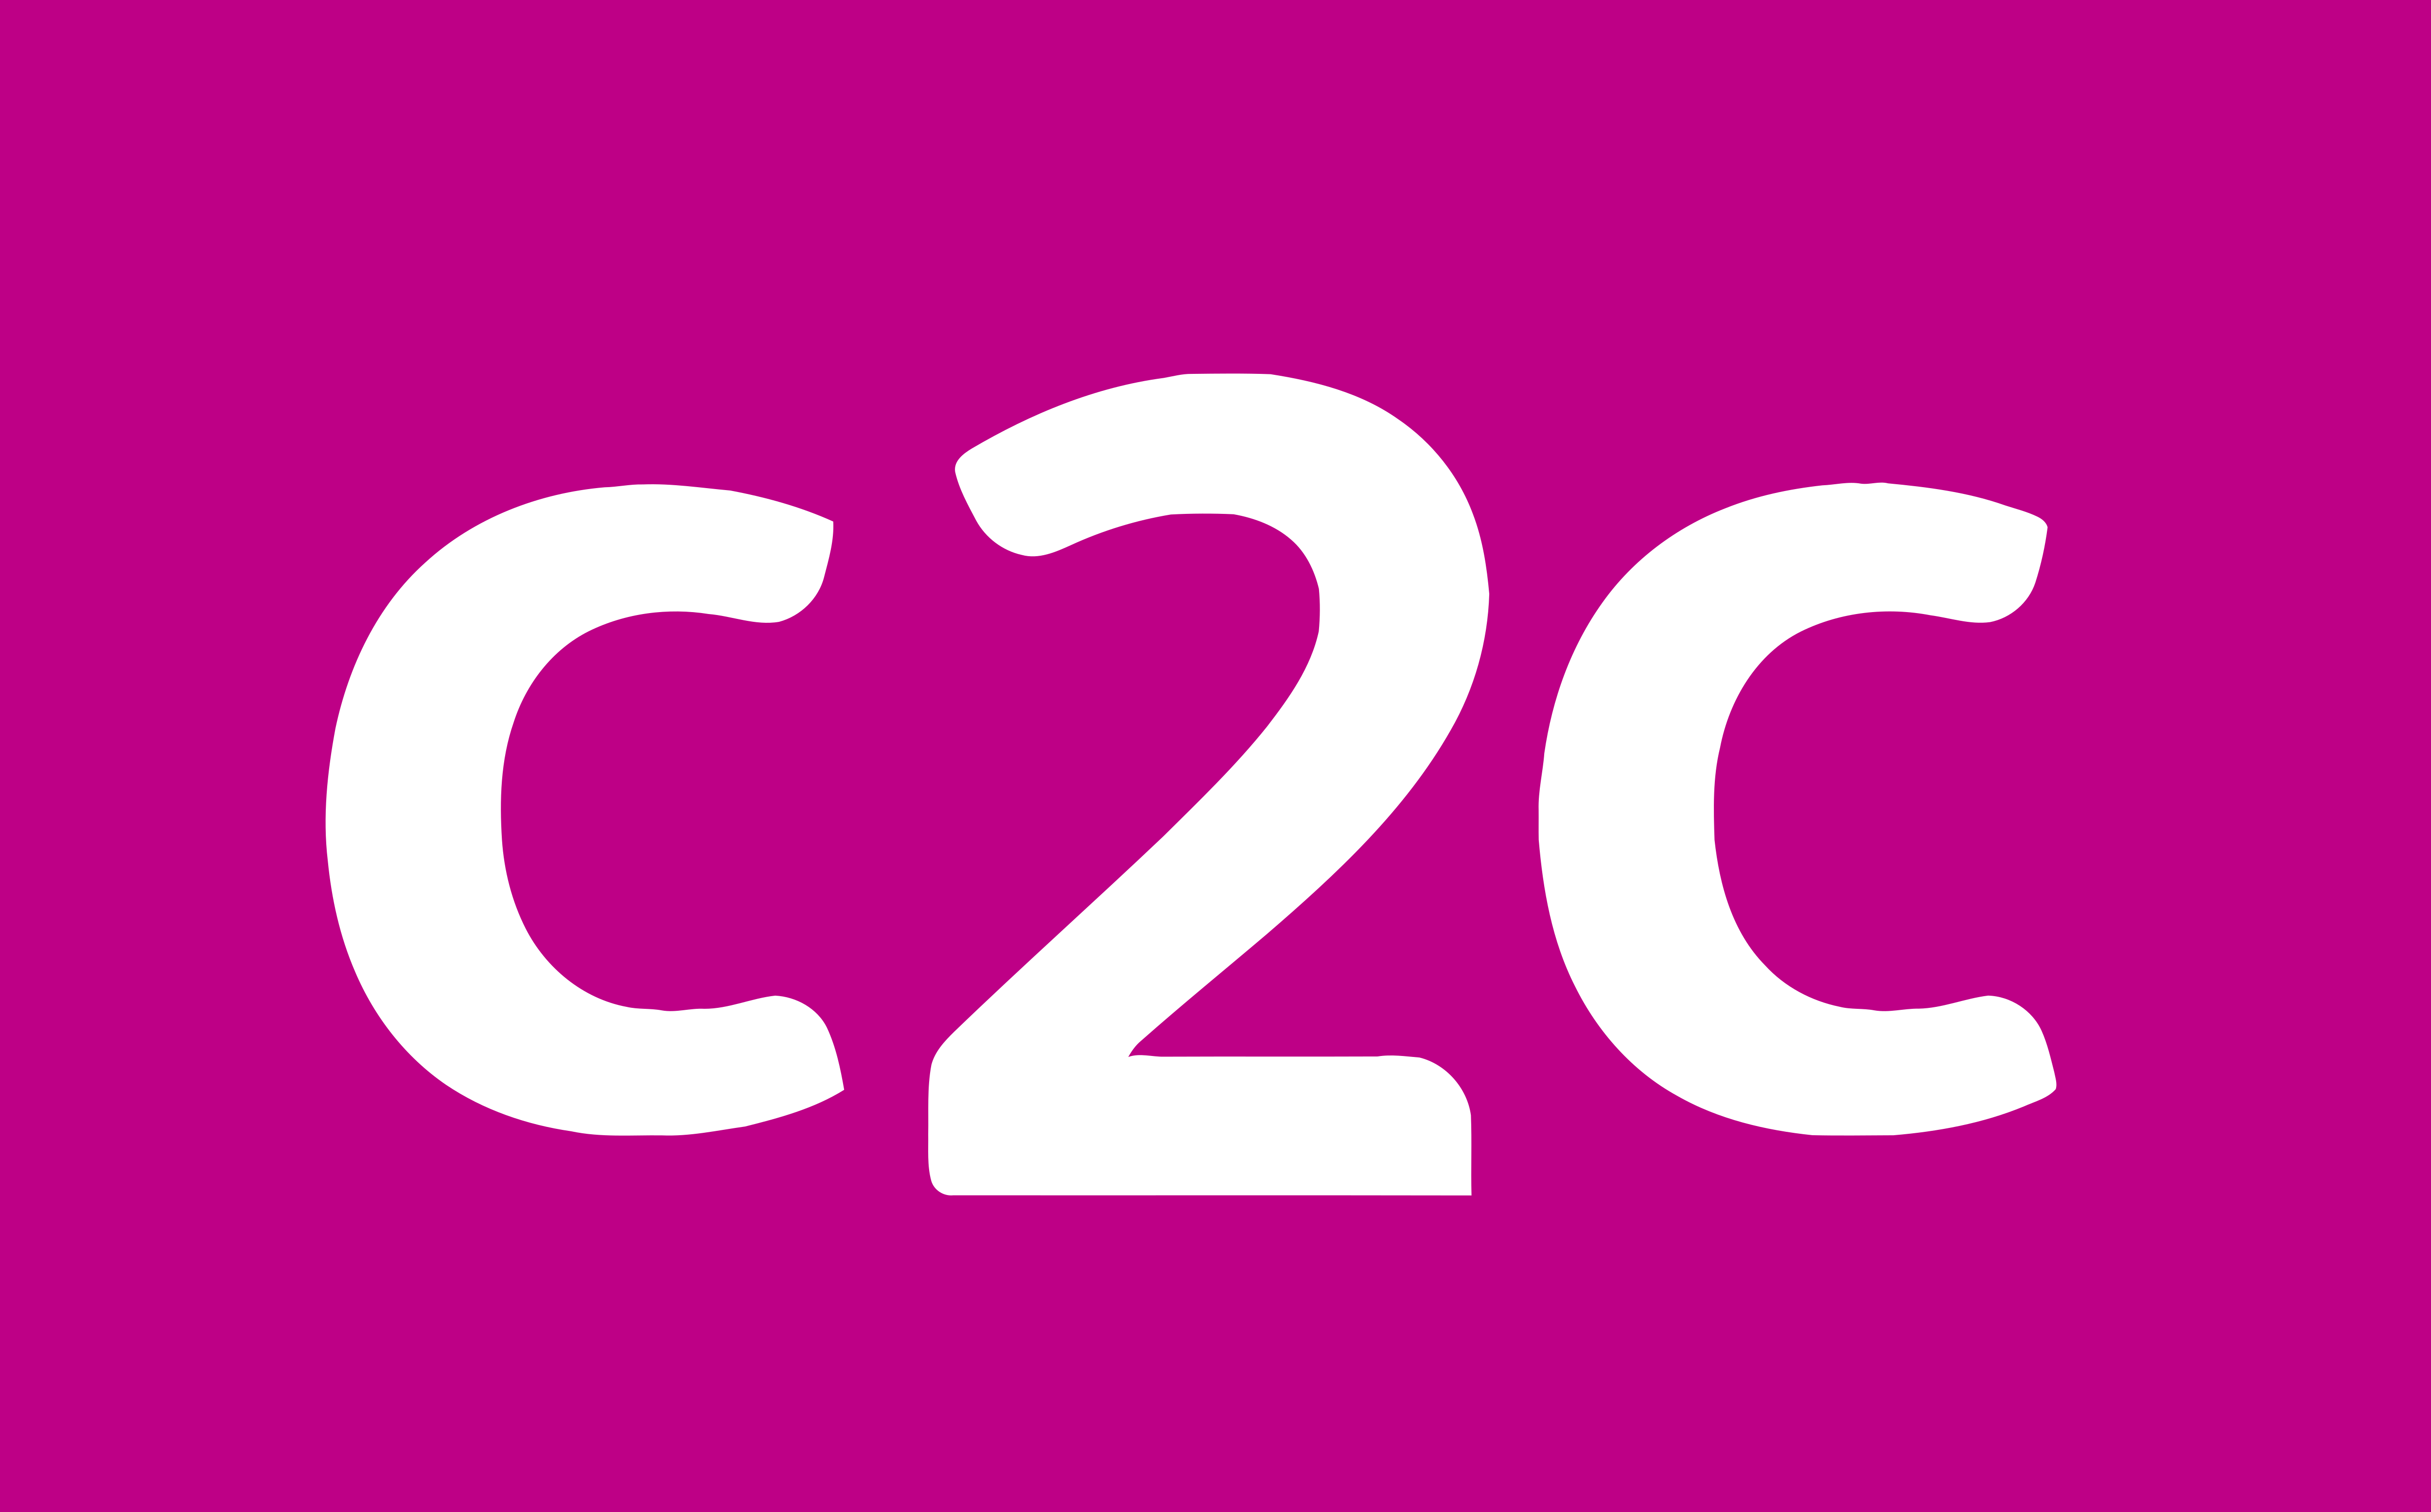 C2c что это. Логотип c. C2c. B2c logo. Логотип с 2 c.